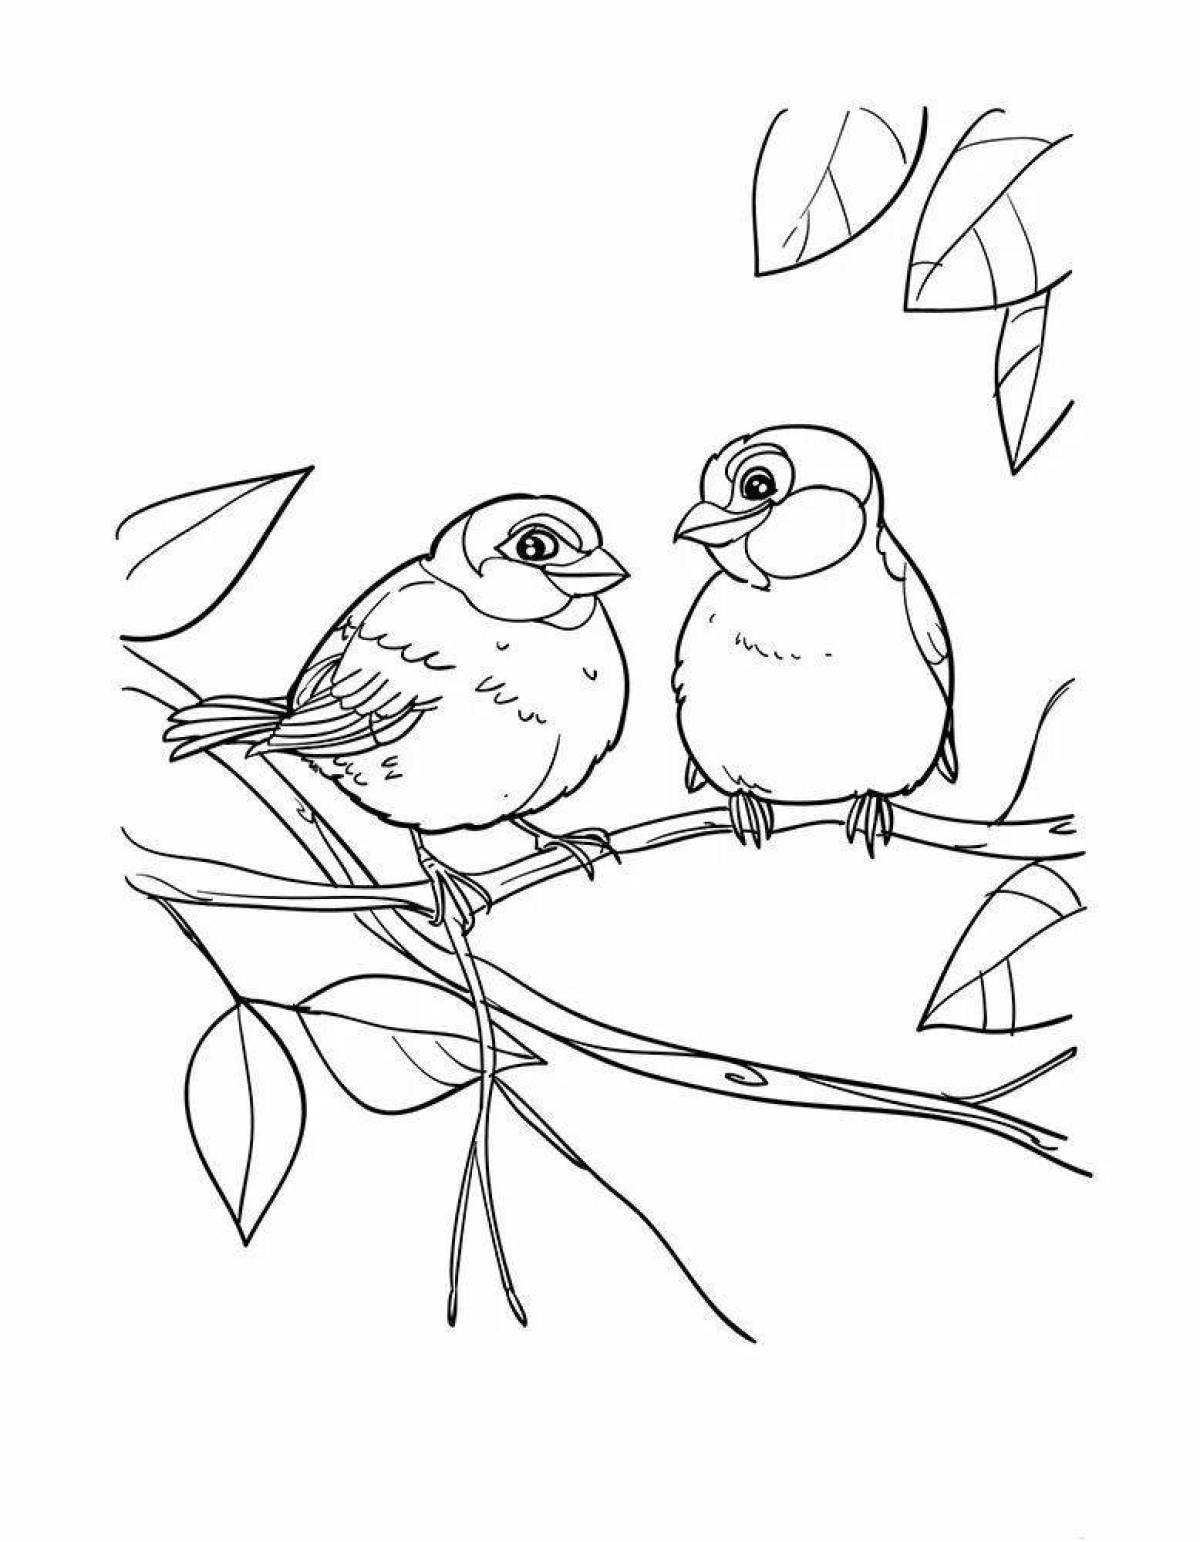 Sparkling sparrows coloring book